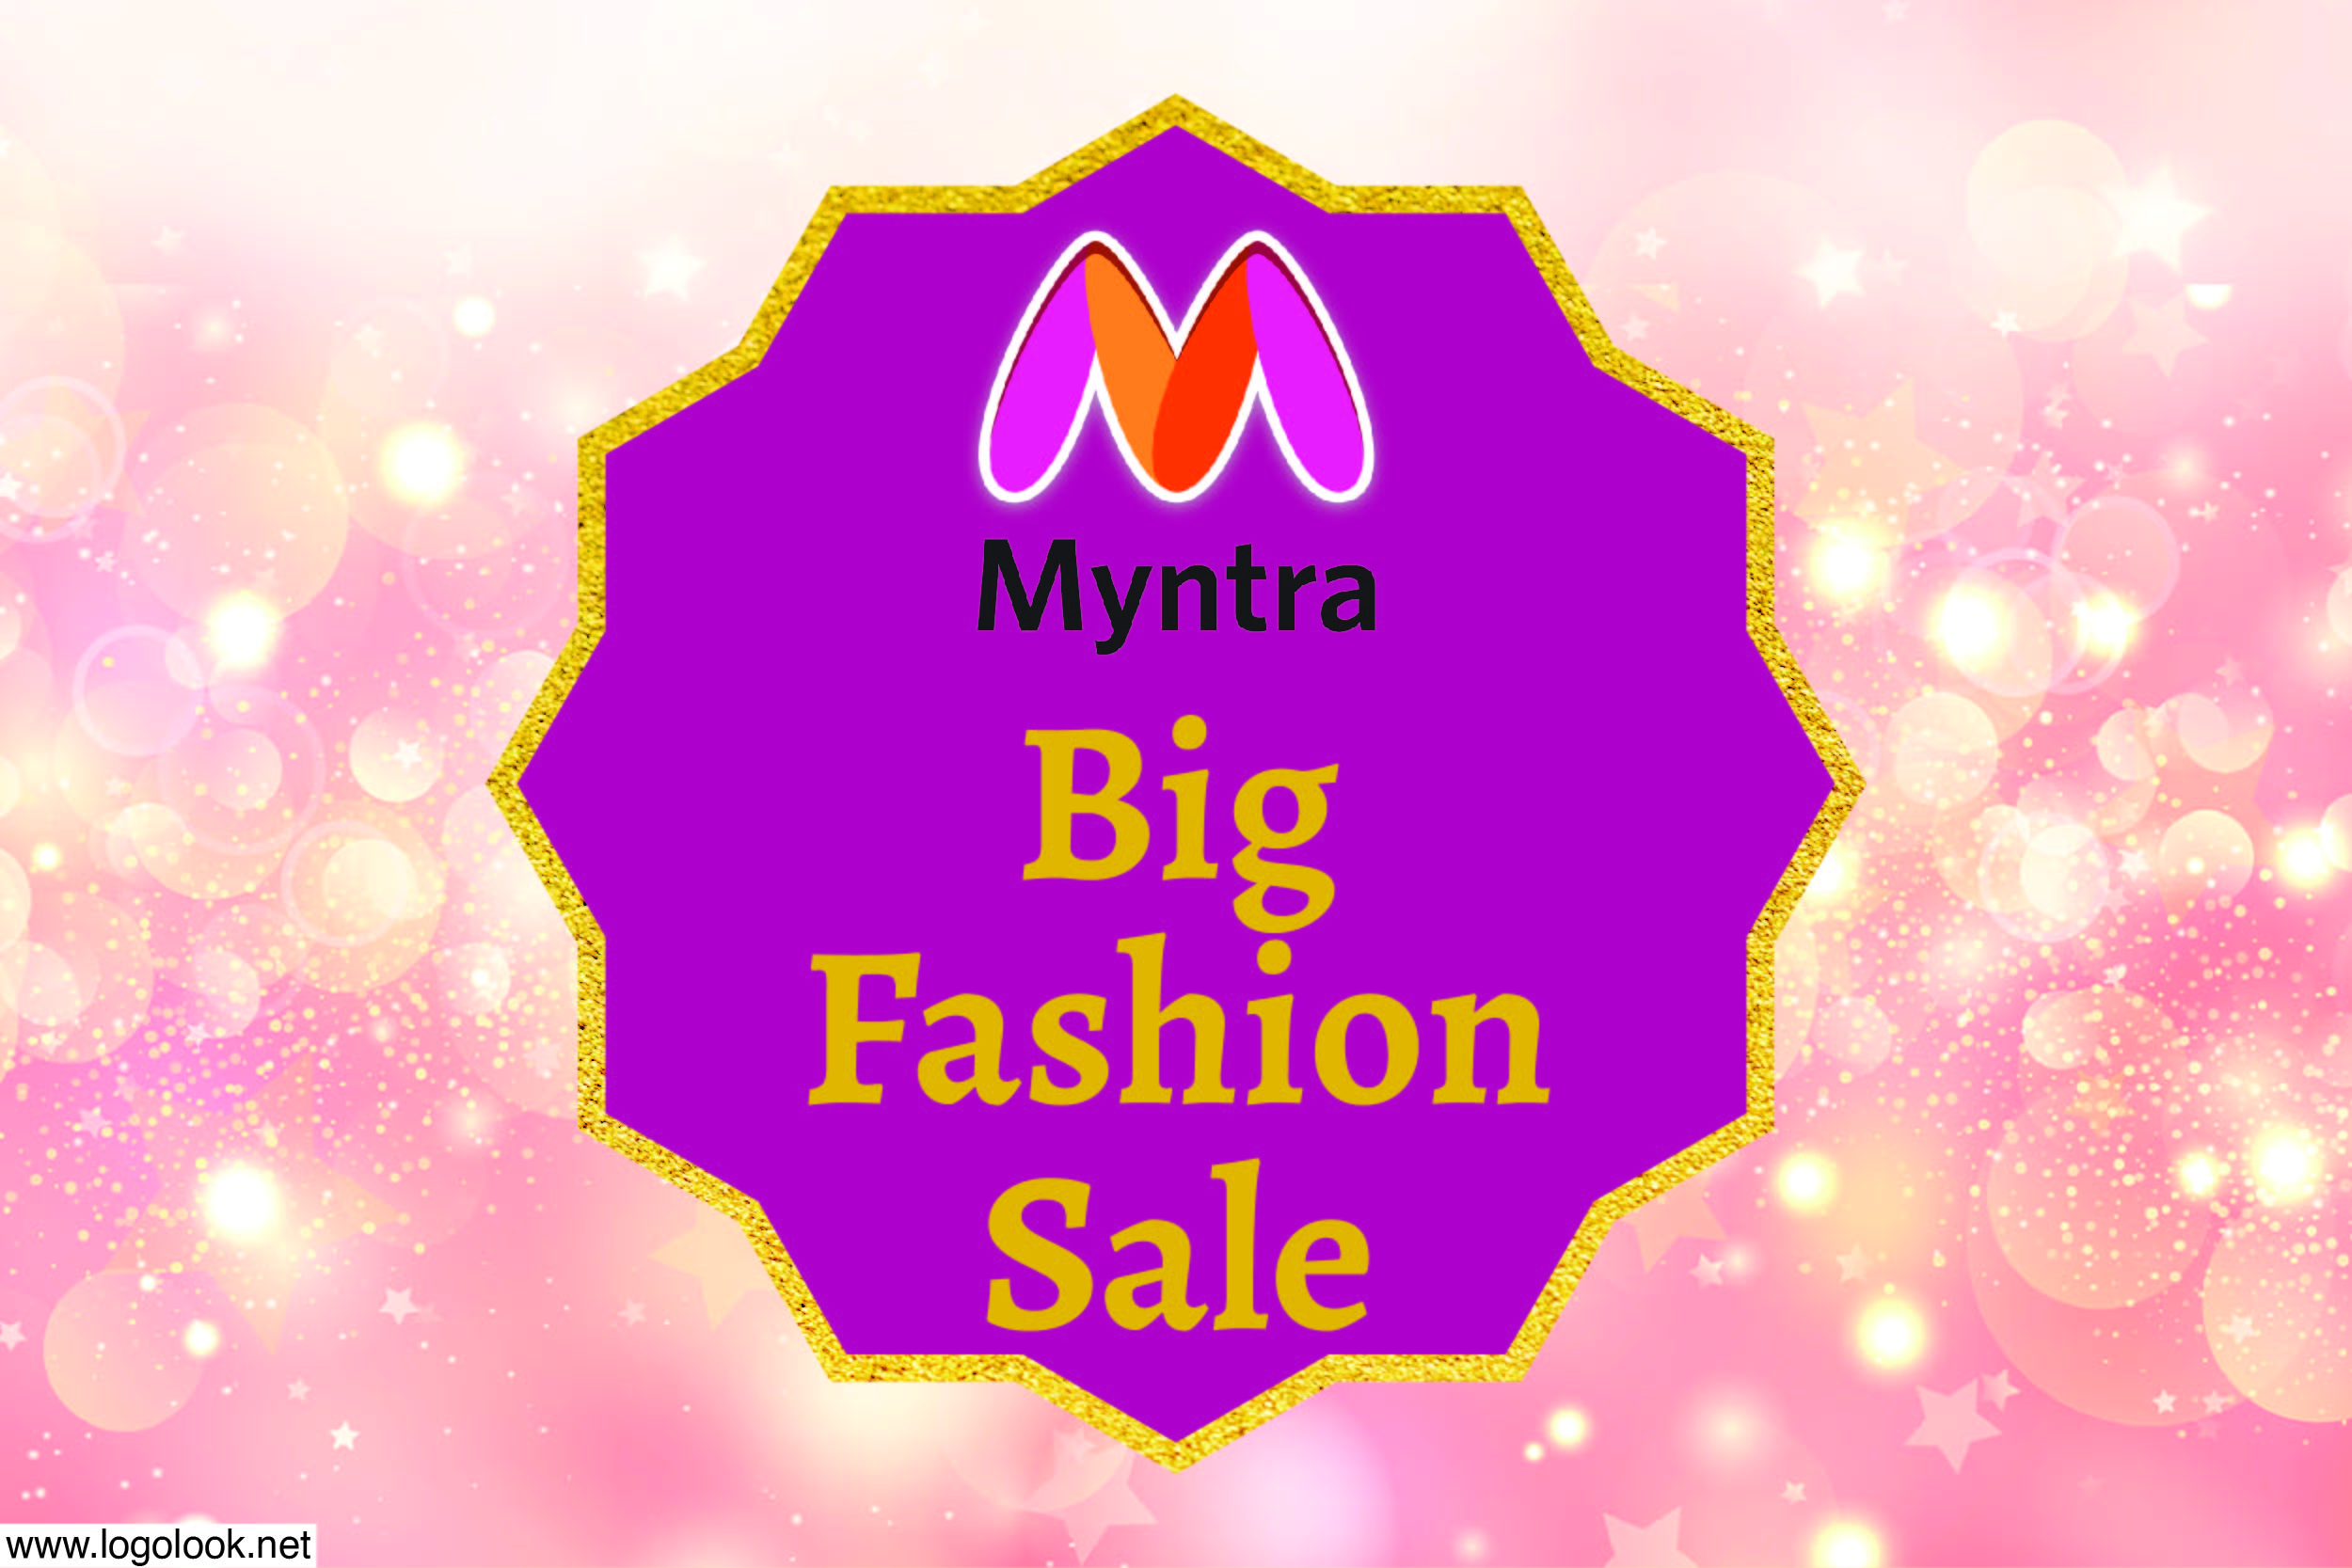 Myntra Big Fashion Sale